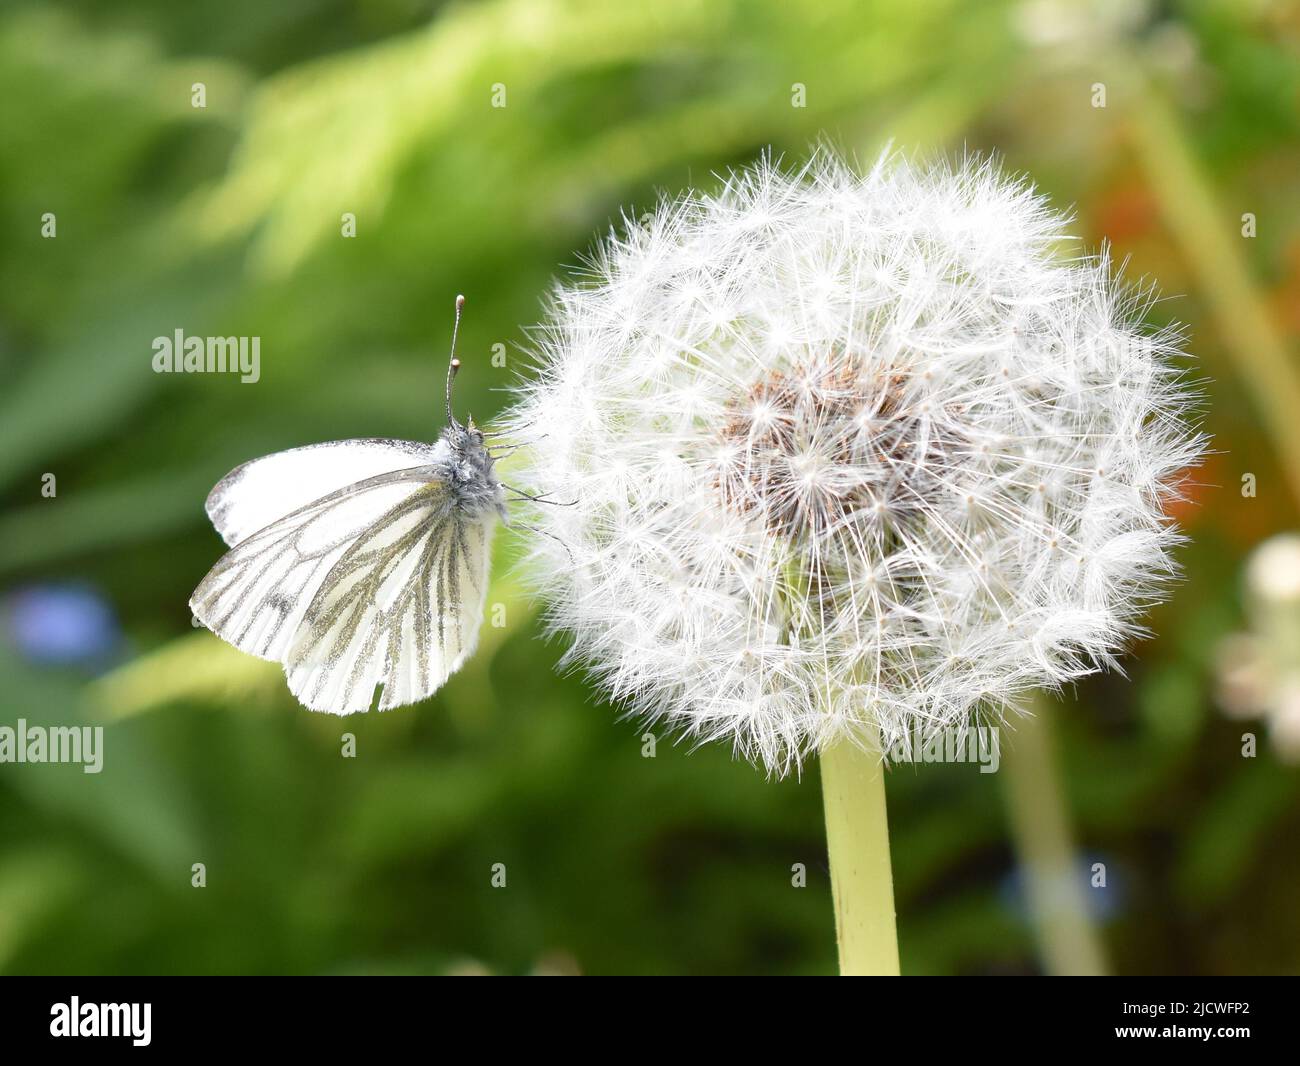 Mariposa de repollo blanco sentada en una bola de semillas de diente de león Foto de stock